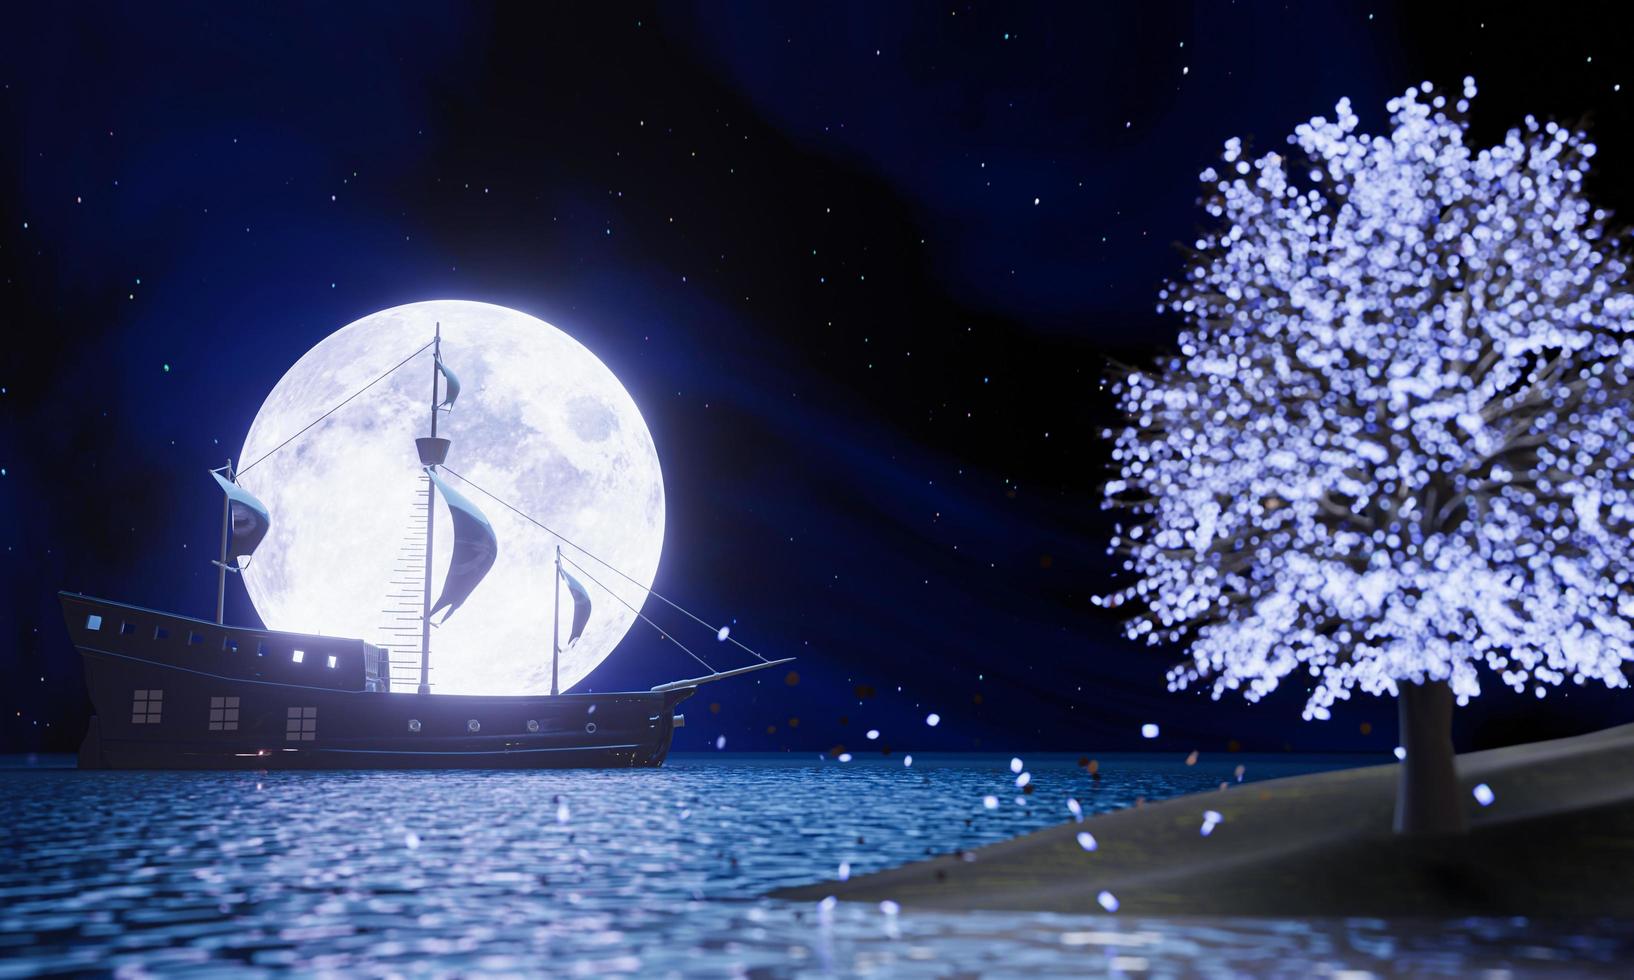 barcos piratas en el mar o el océano frente a la luna llena. silueta de barco pirata más allá de la superluna con reflejo en la superficie del agua. el árbol que brilla intensamente en el lado desenfocado es bokeh. representación 3d foto